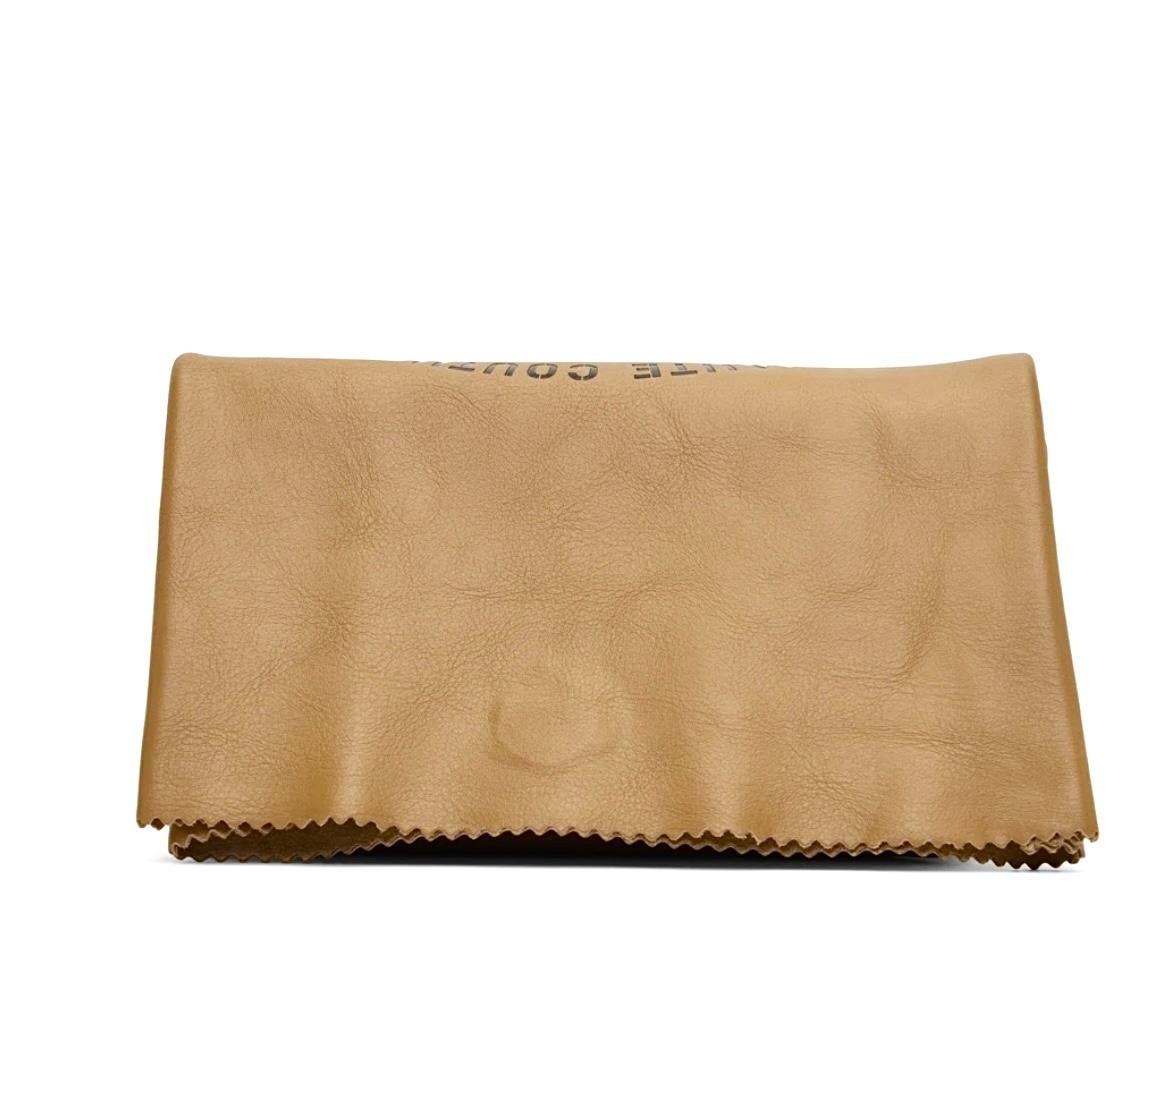 Vetement Couture Limitierte Auflage Kalbsleder-Brieftasche Clutch Messenger Bag, 2019 (Postmoderne) im Angebot